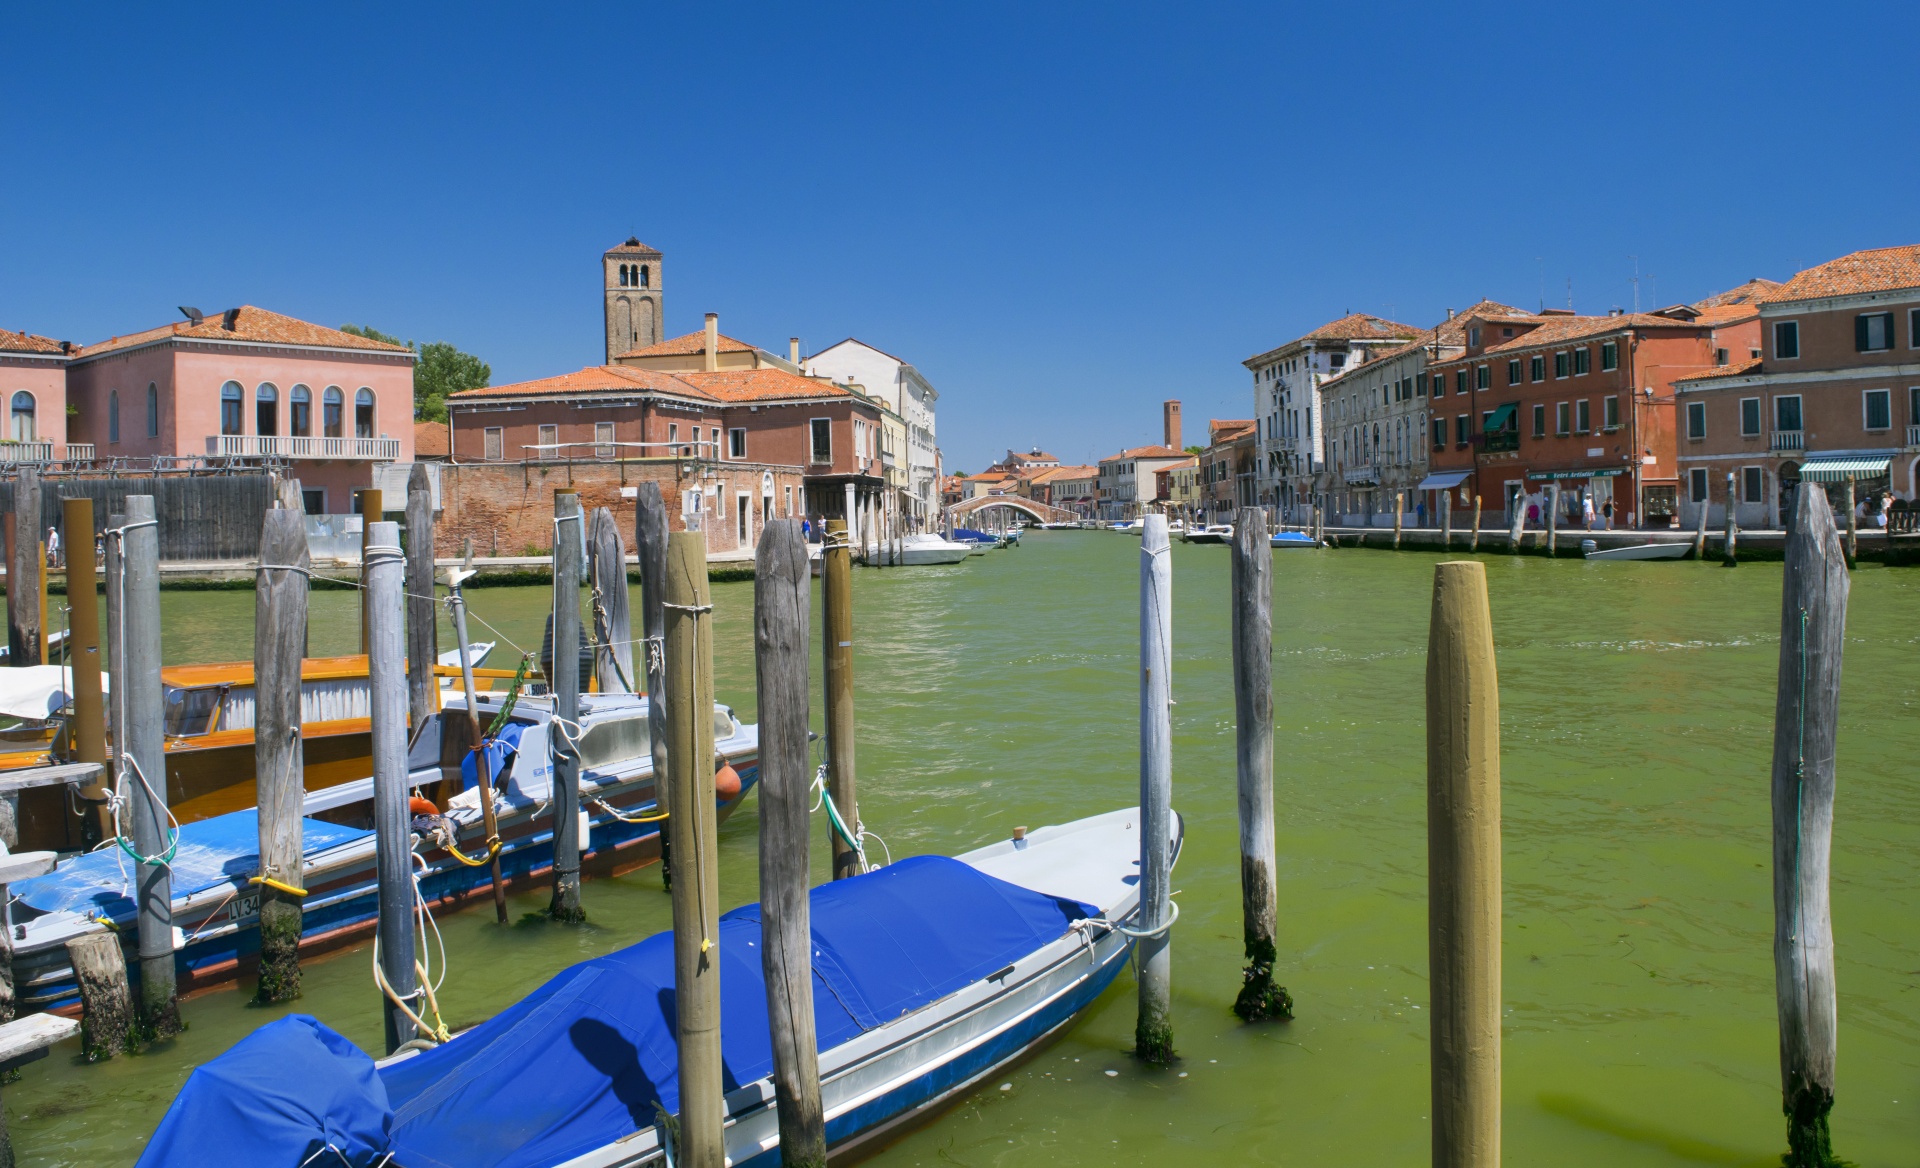 Venice Image 1540